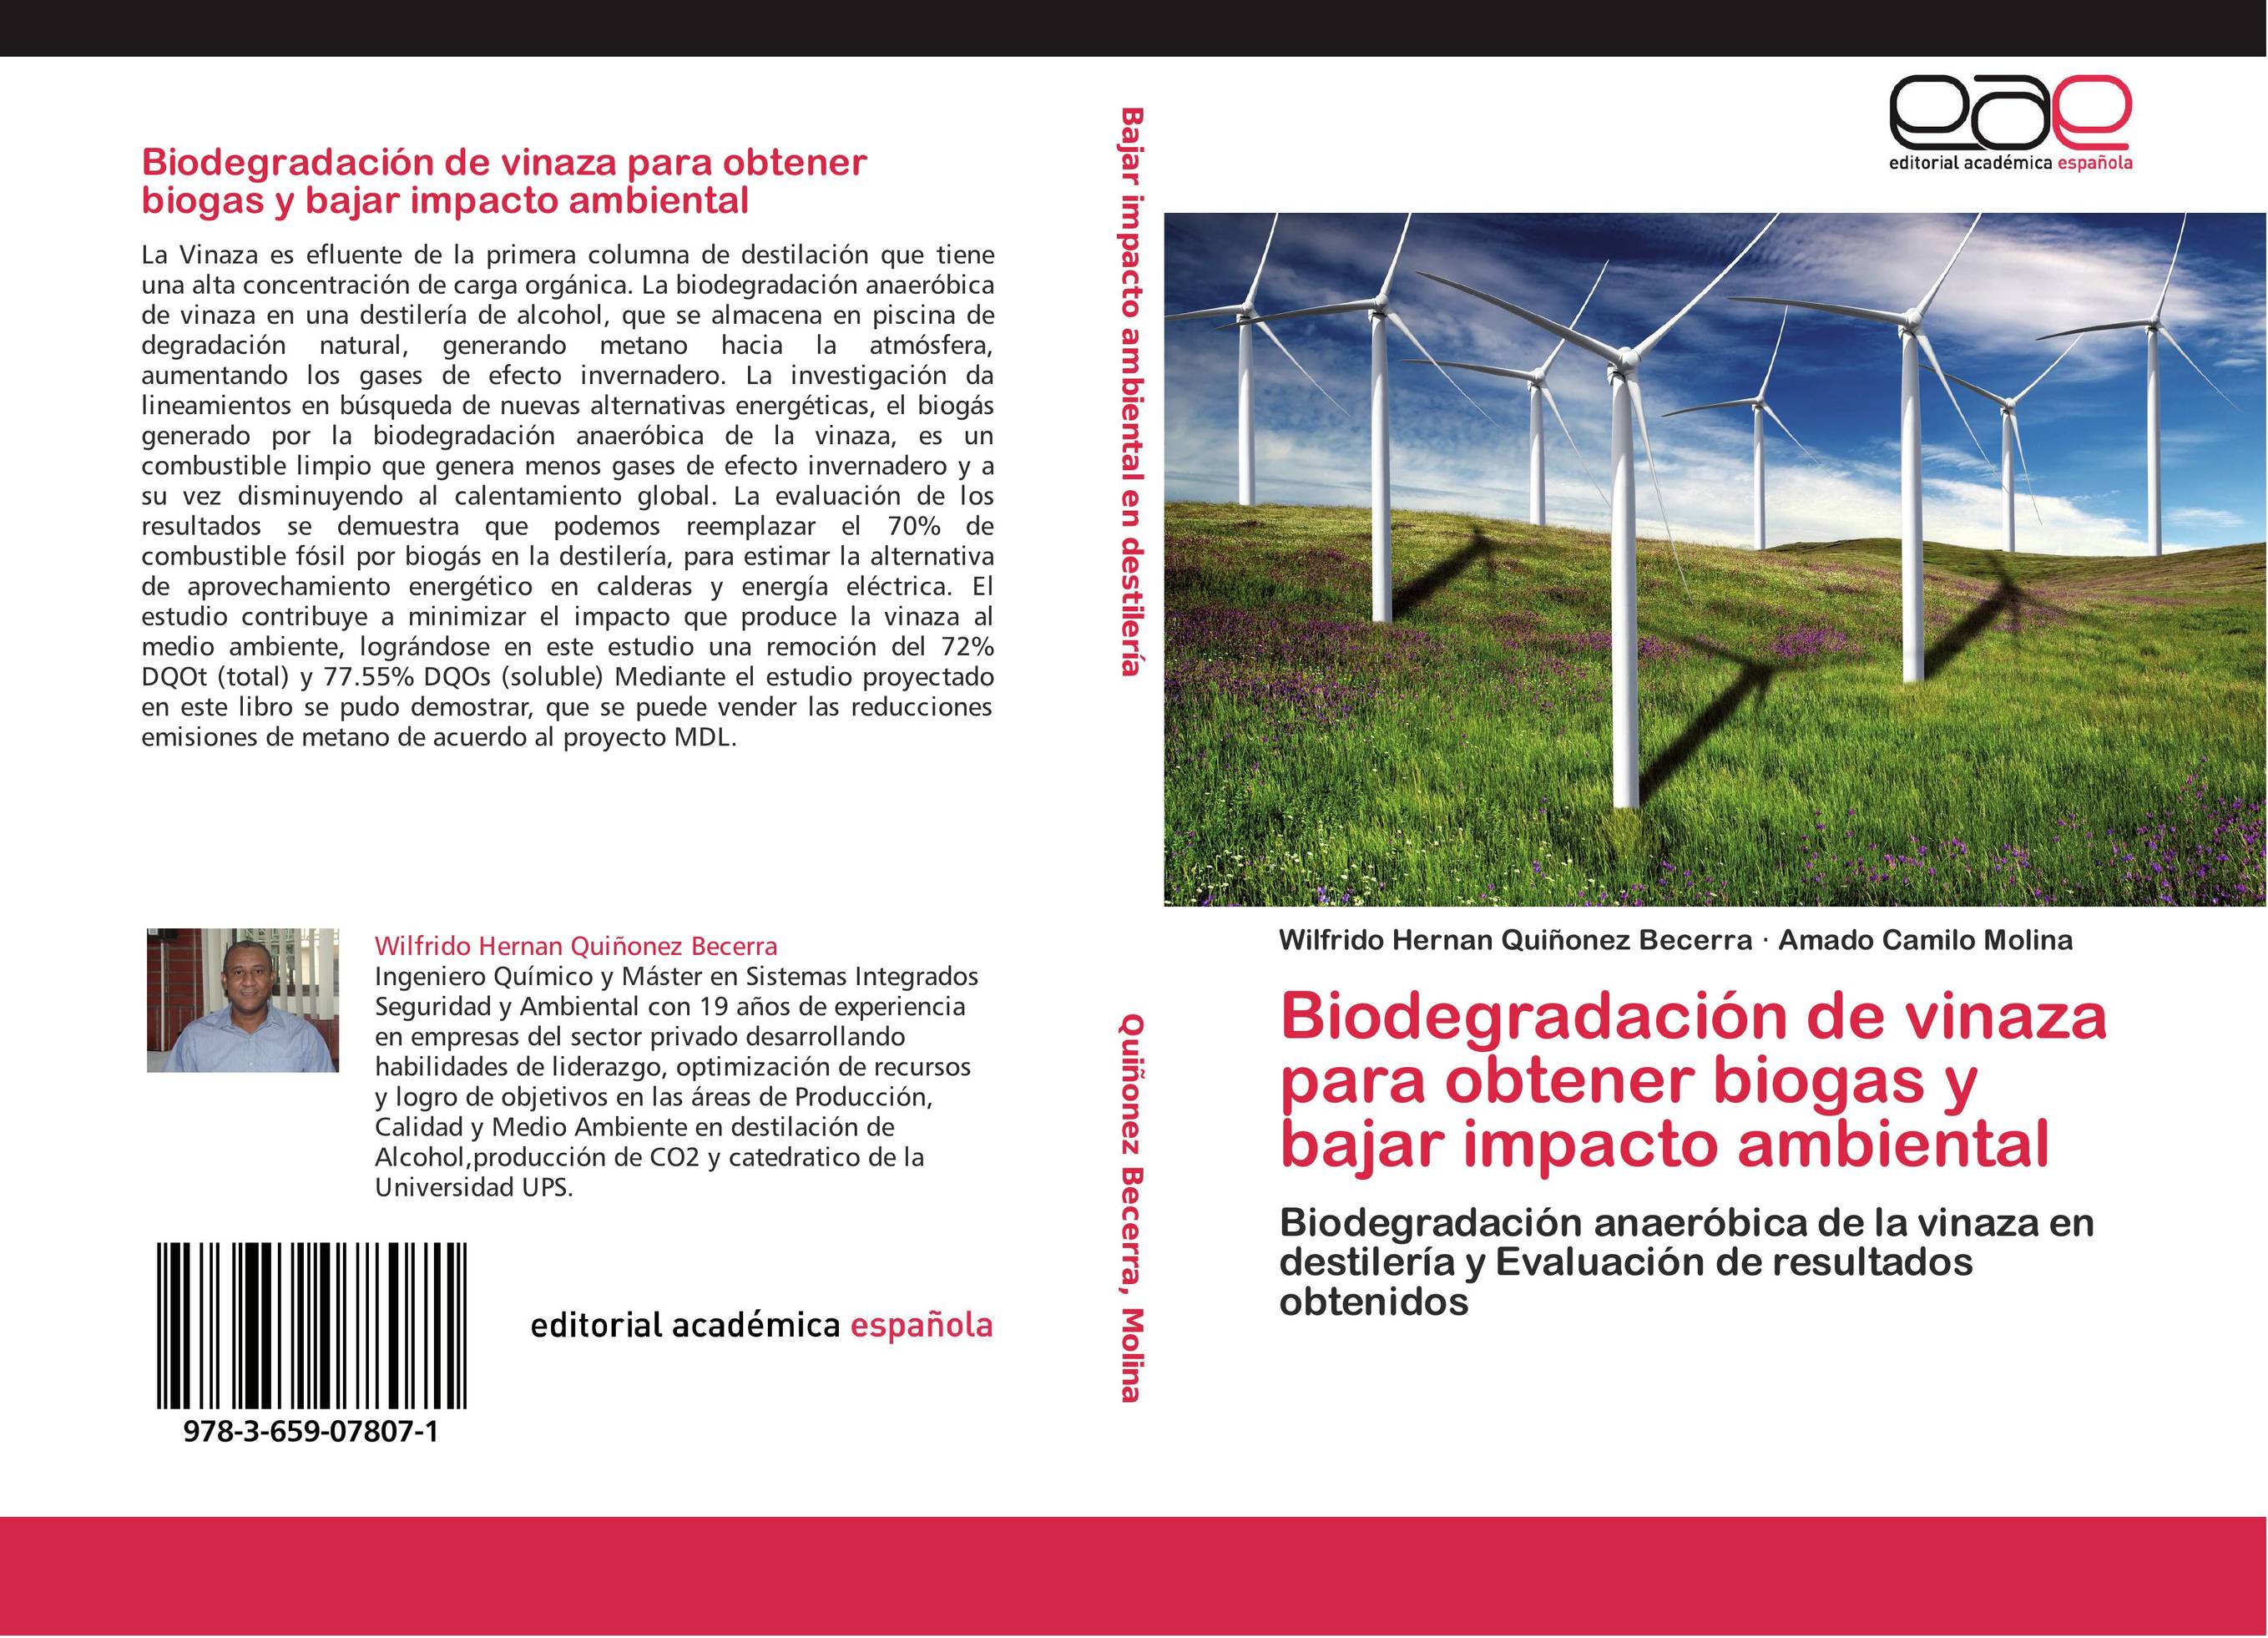 Biodegradación de vinaza para obtener biogas y bajar impacto ambiental